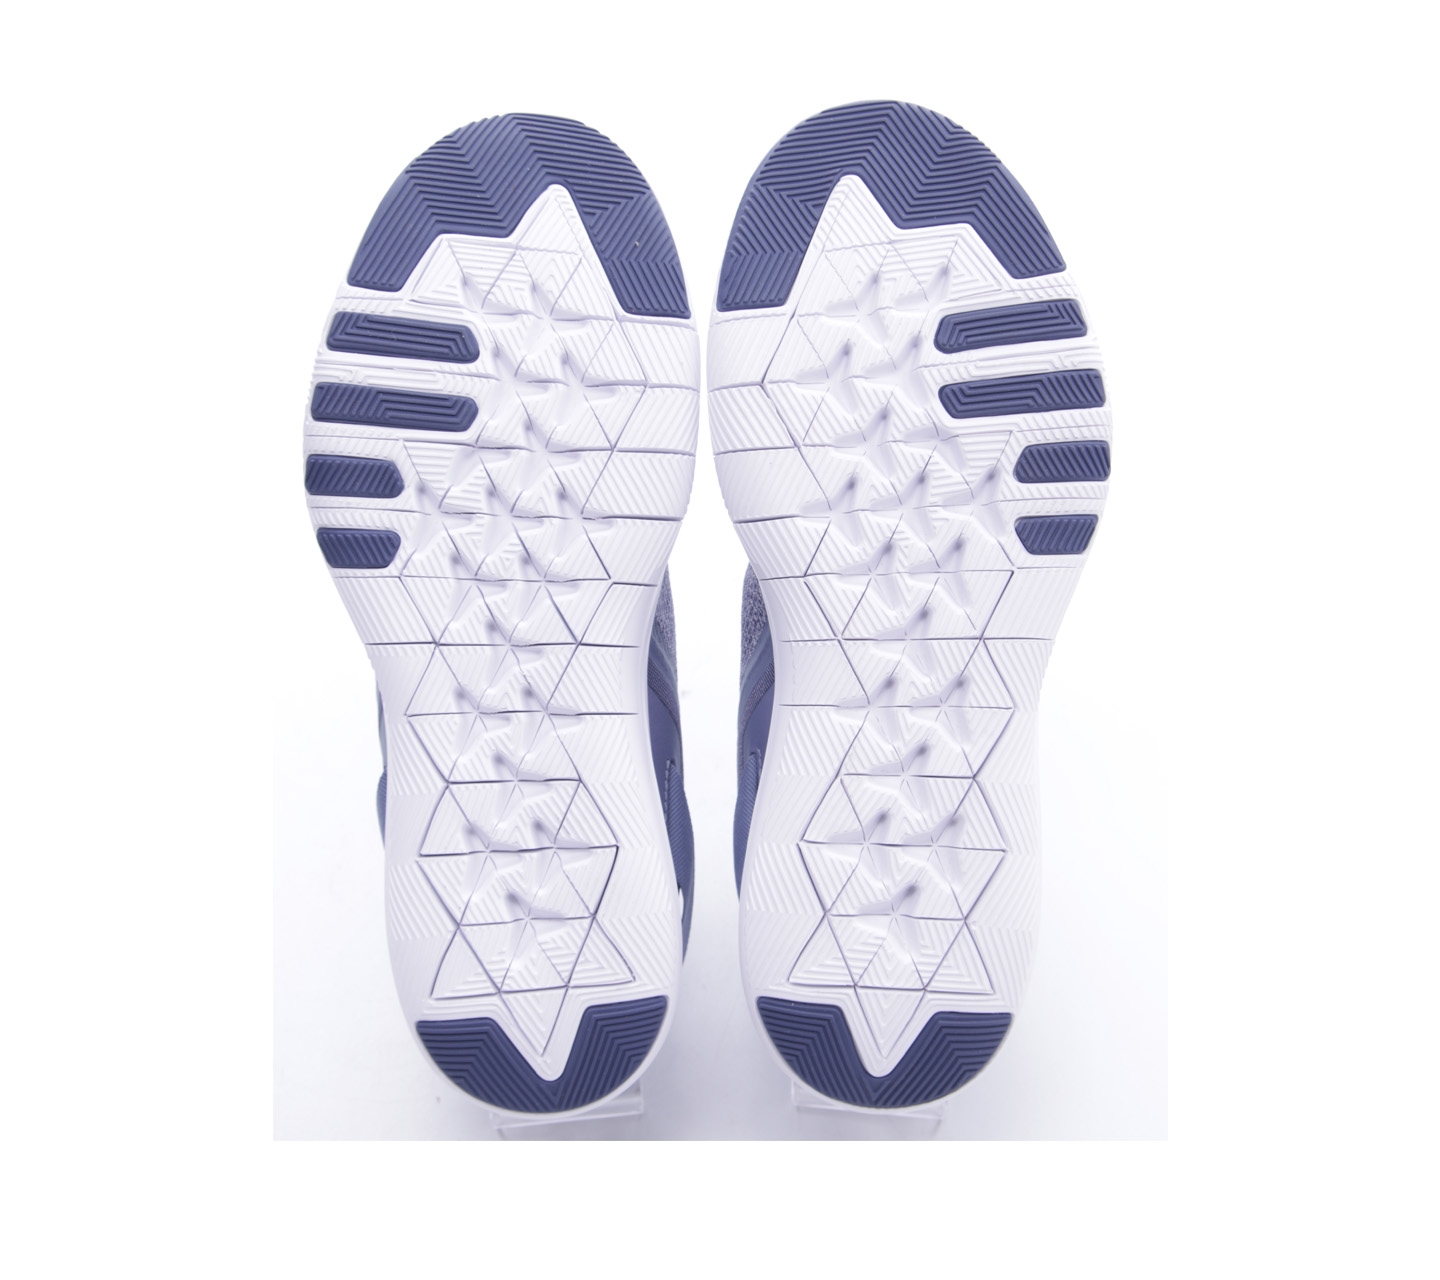 Nike WMNS Flex Trainer 9 Purple Sneakers